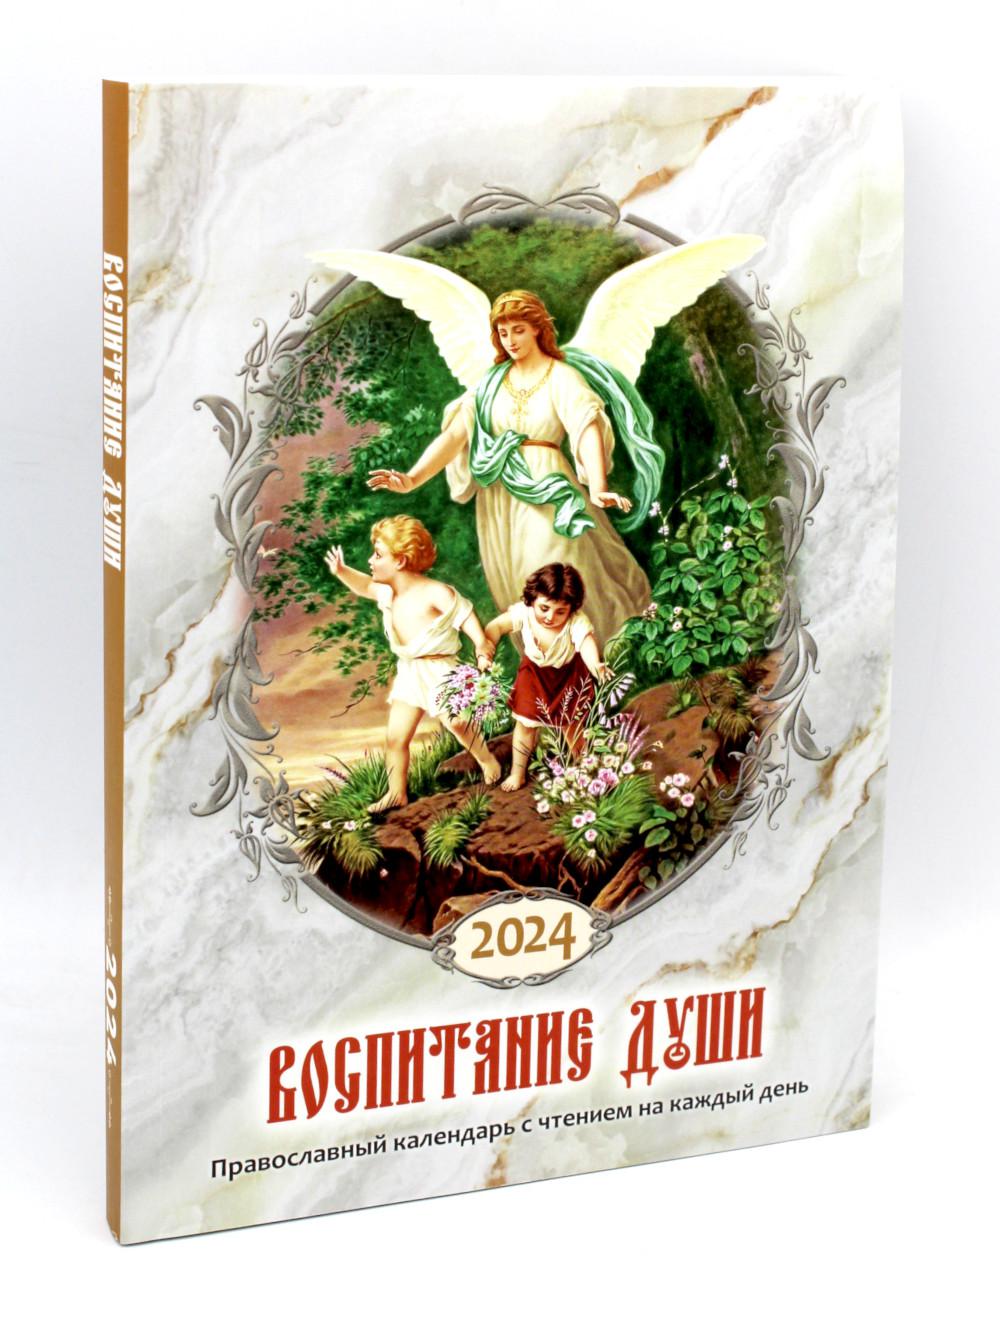 Воспитание души. Православный календарь с чтением на каждый день. 2024 год